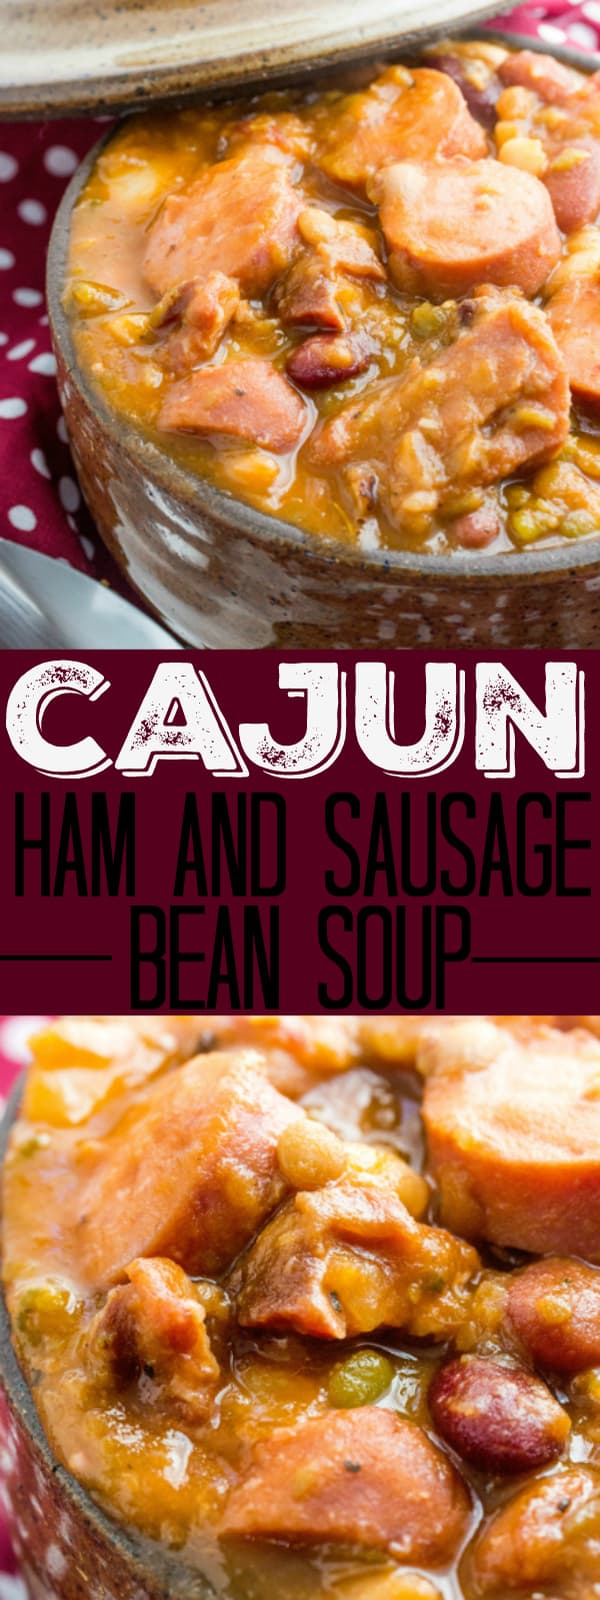 Cajun Ham and Sausage Bean Soup